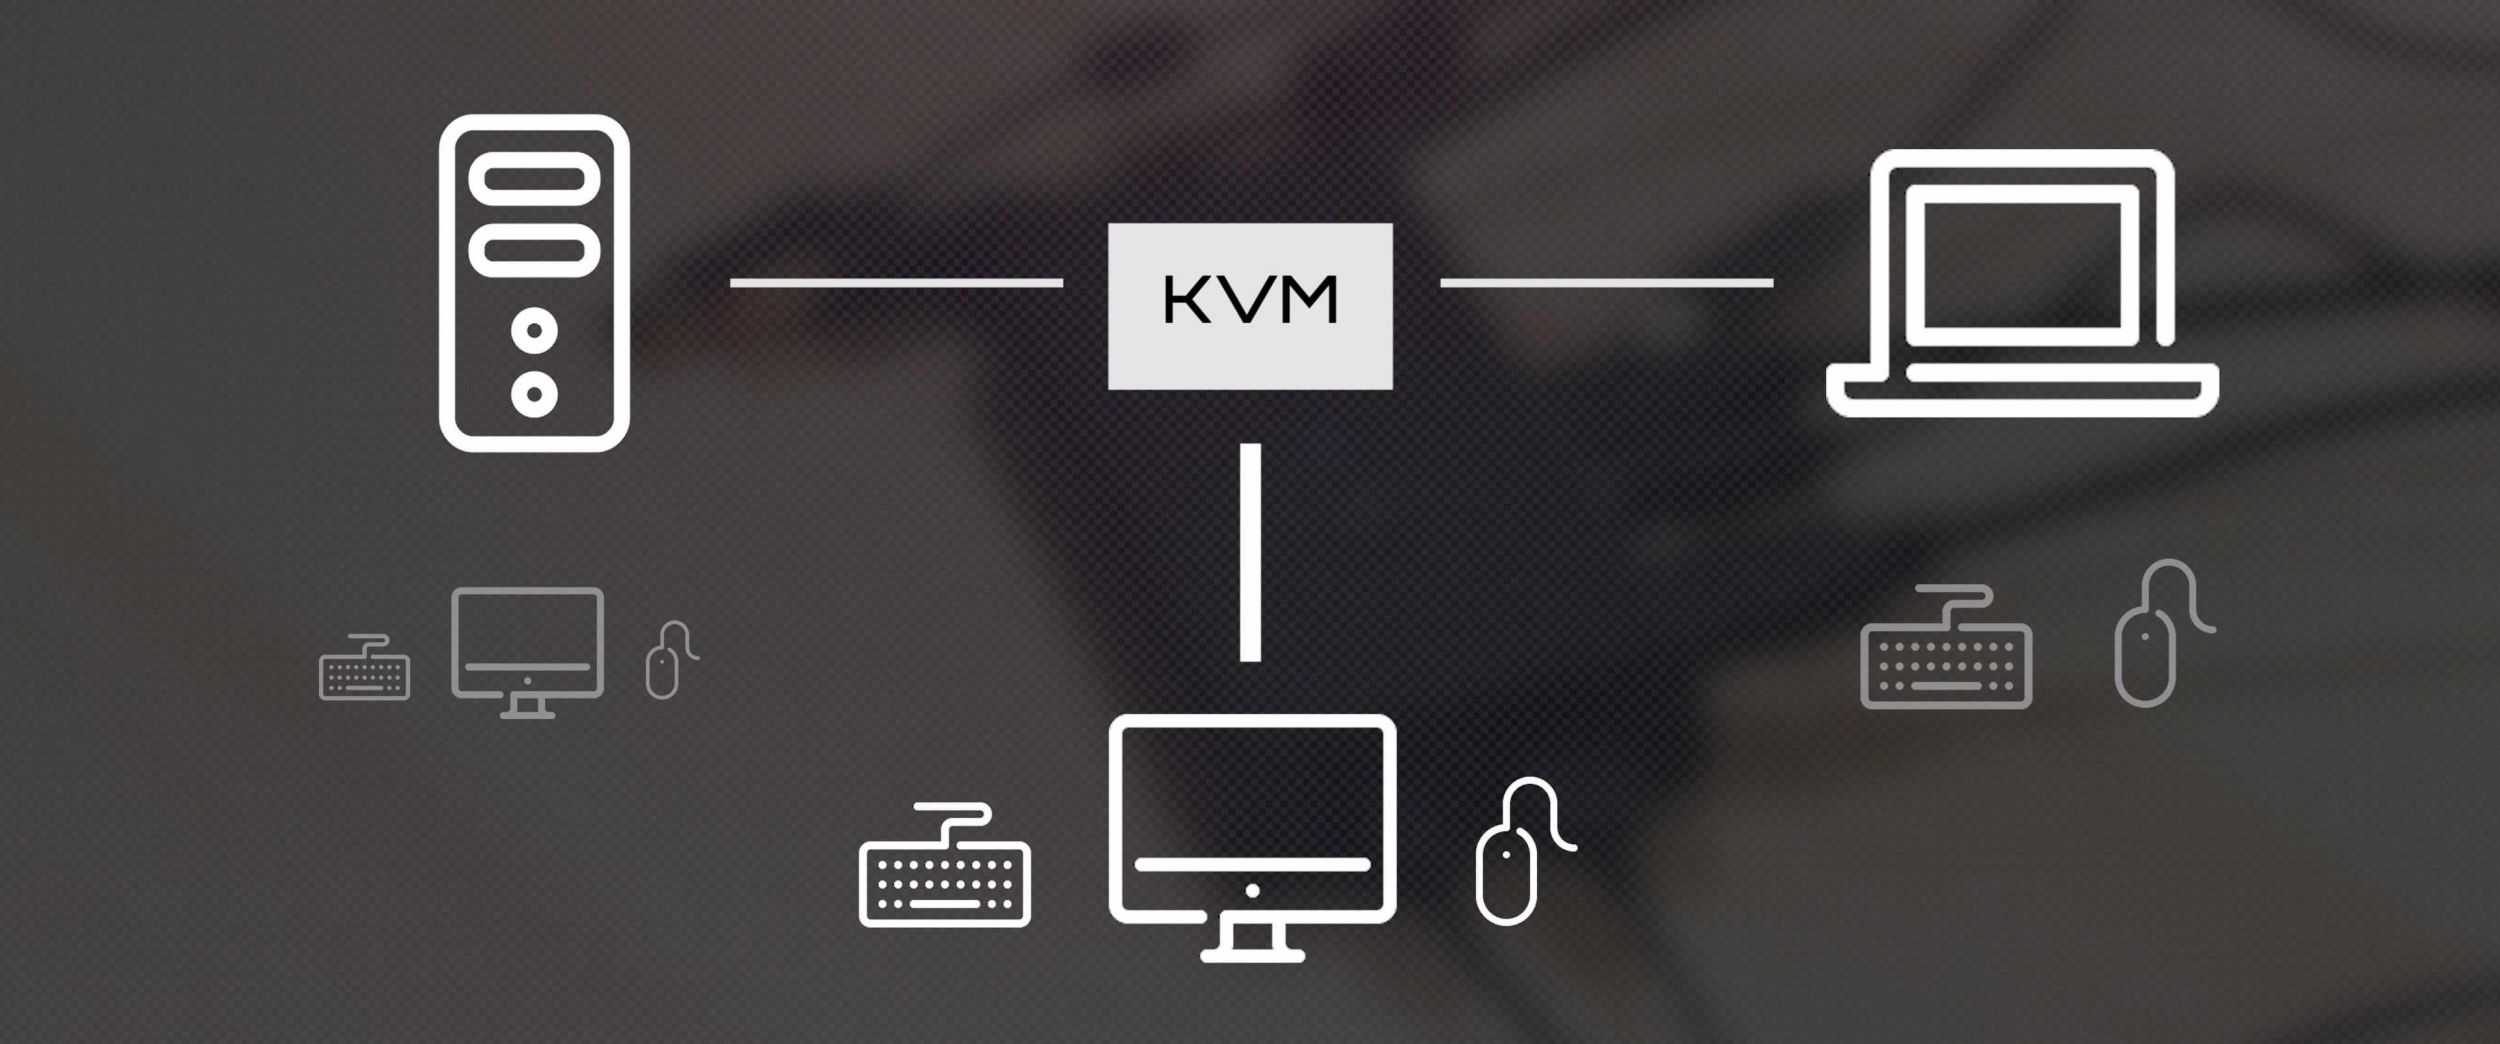 How KVM work flow image